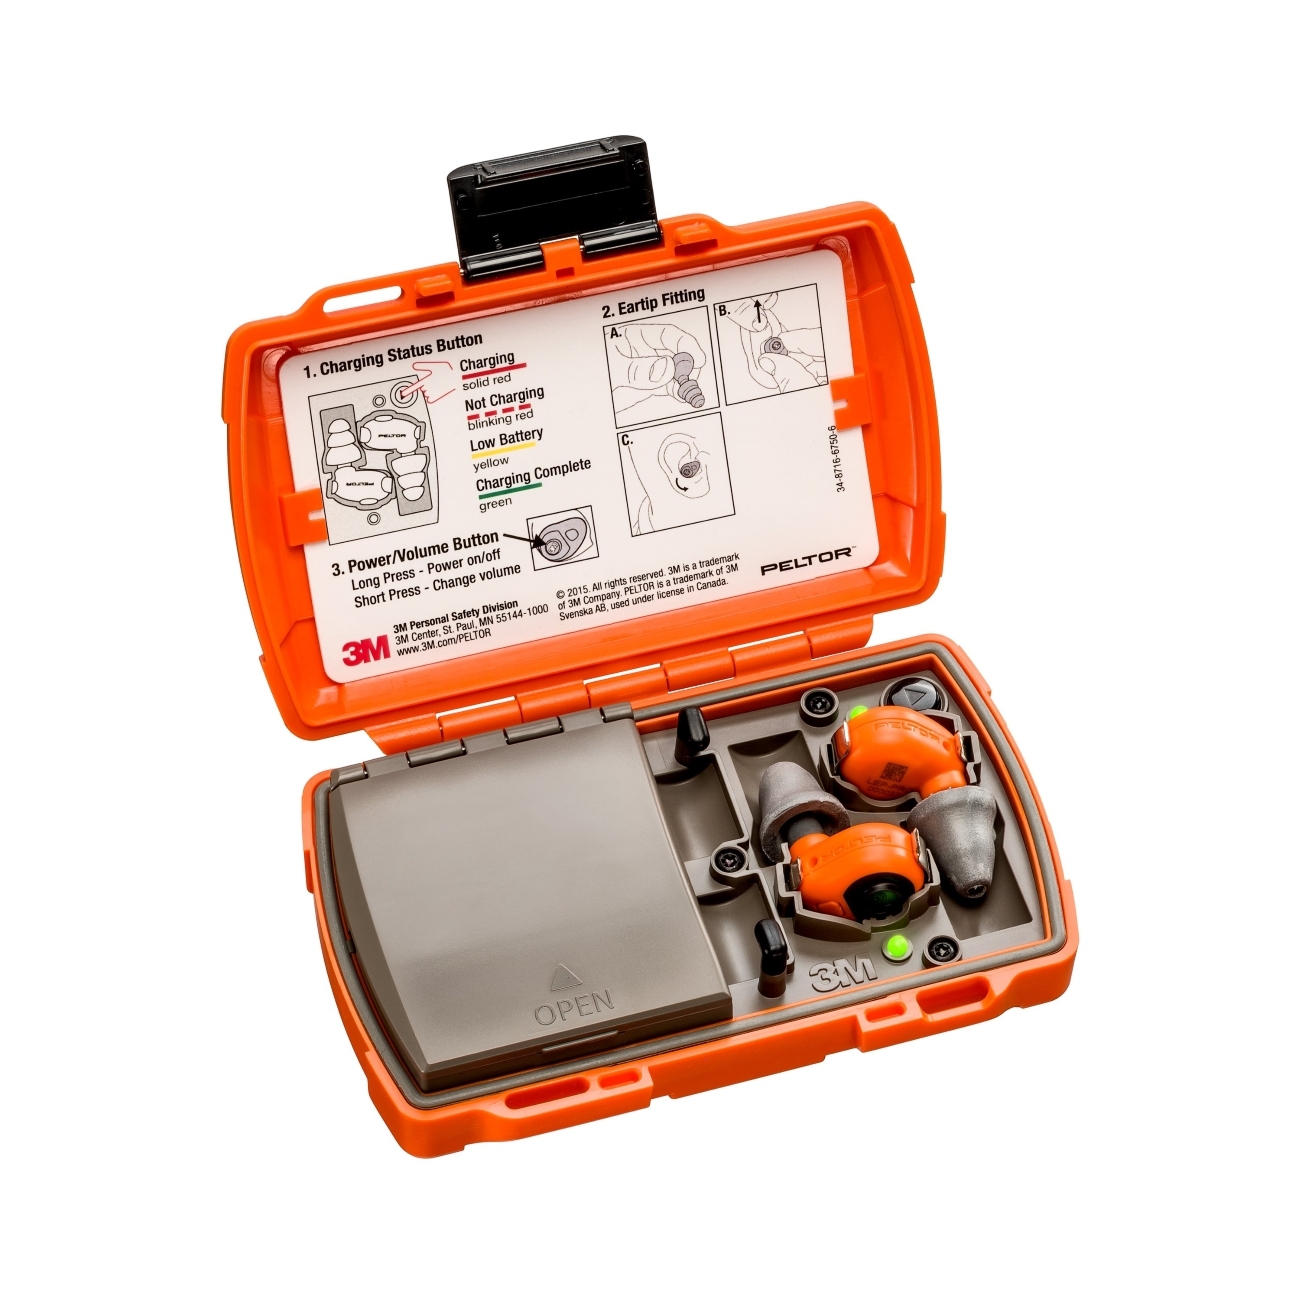 3M PELTOR LEP-200 EU oranssi, jossa on lisäantenni äänisignaalien langatonta vastaanottoa varten, setti: korvatulpat ja latausasema (suljetulla kannella ja USB-porteilla) ovat IP-54-luokiteltuja ja vesitiiviitä (30 minuutin upotus 1 metrin syvyyteen)